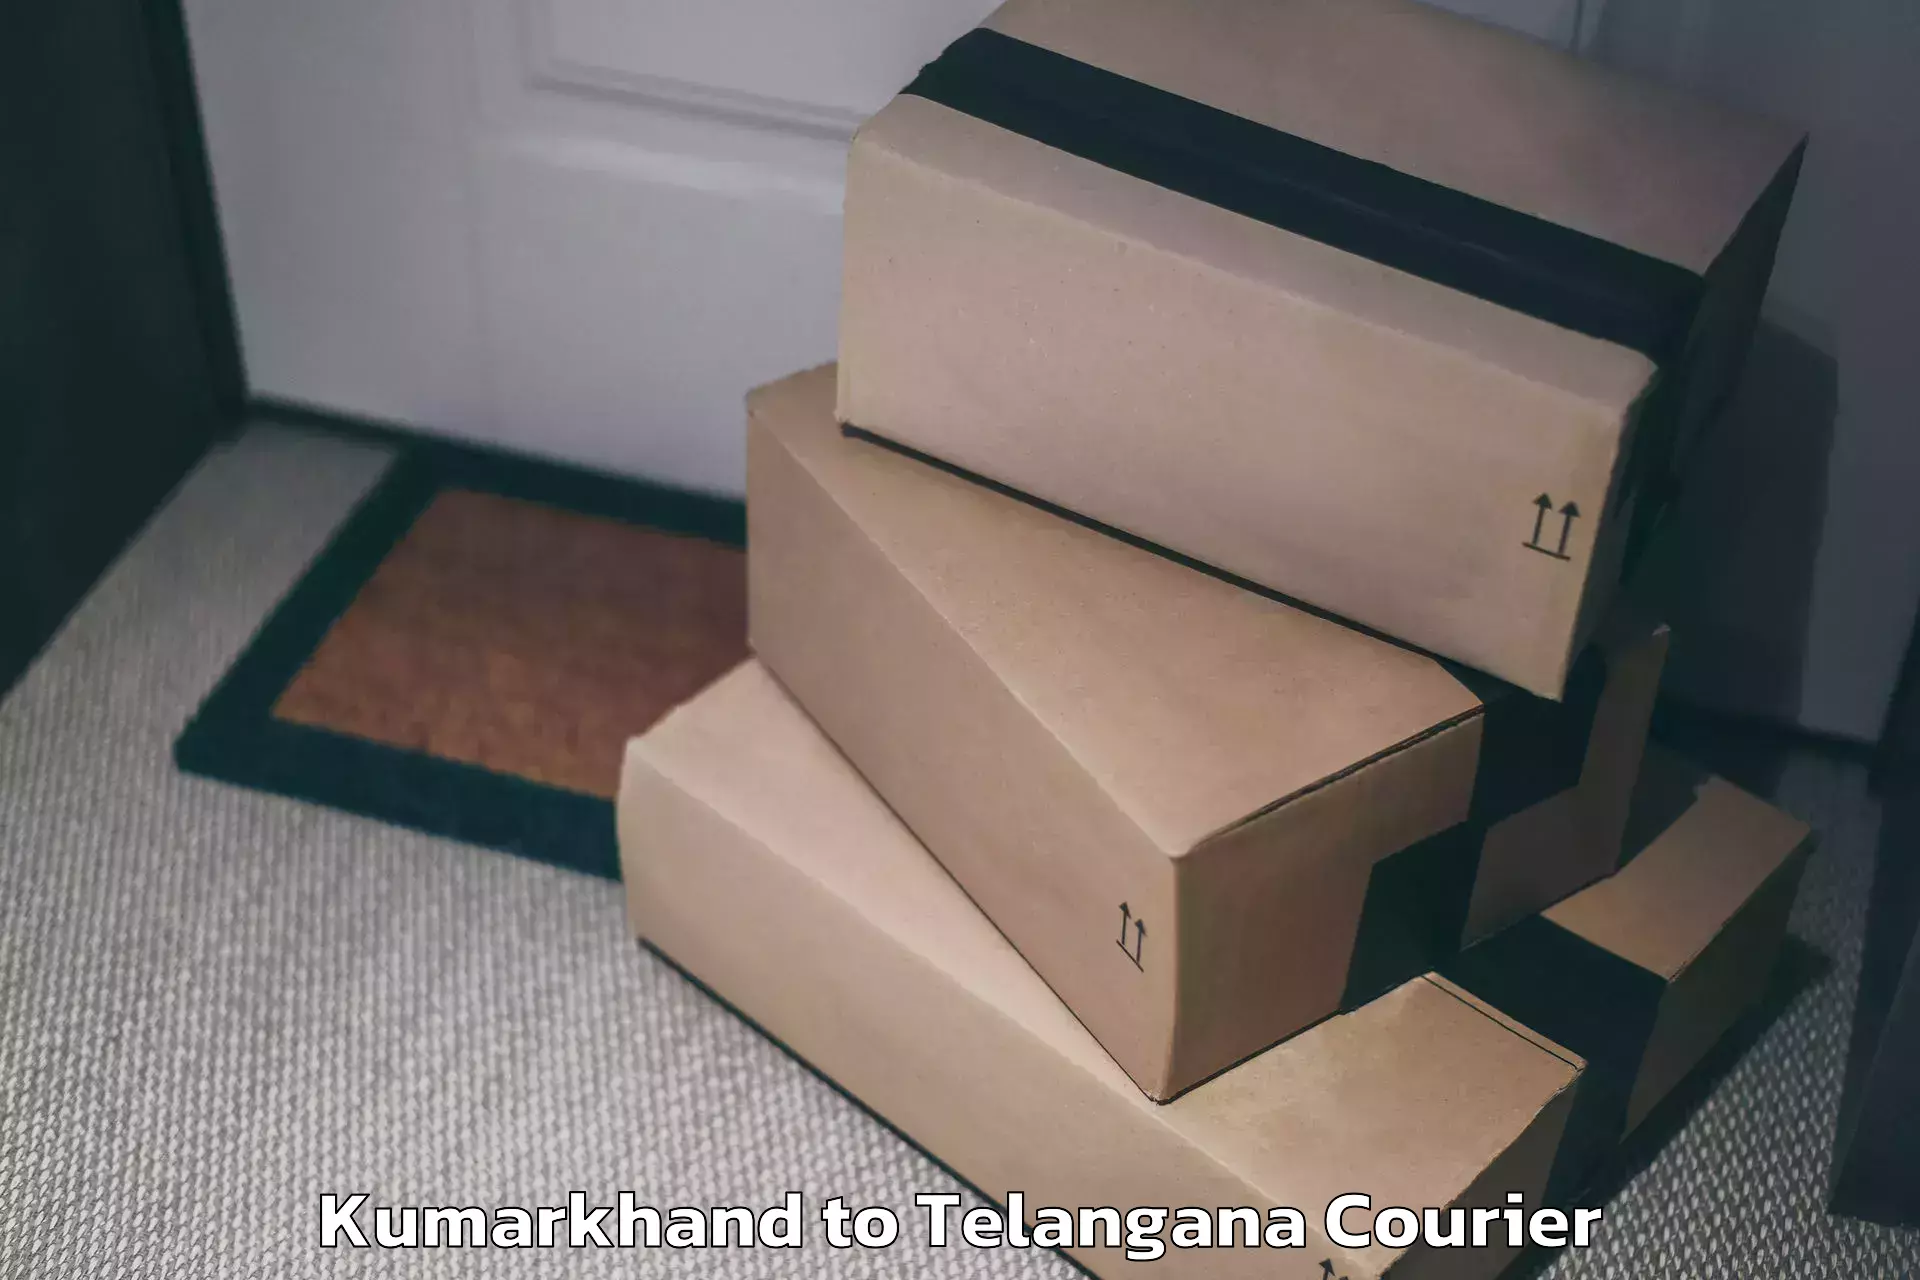 Baggage shipping service Kumarkhand to Yellandu